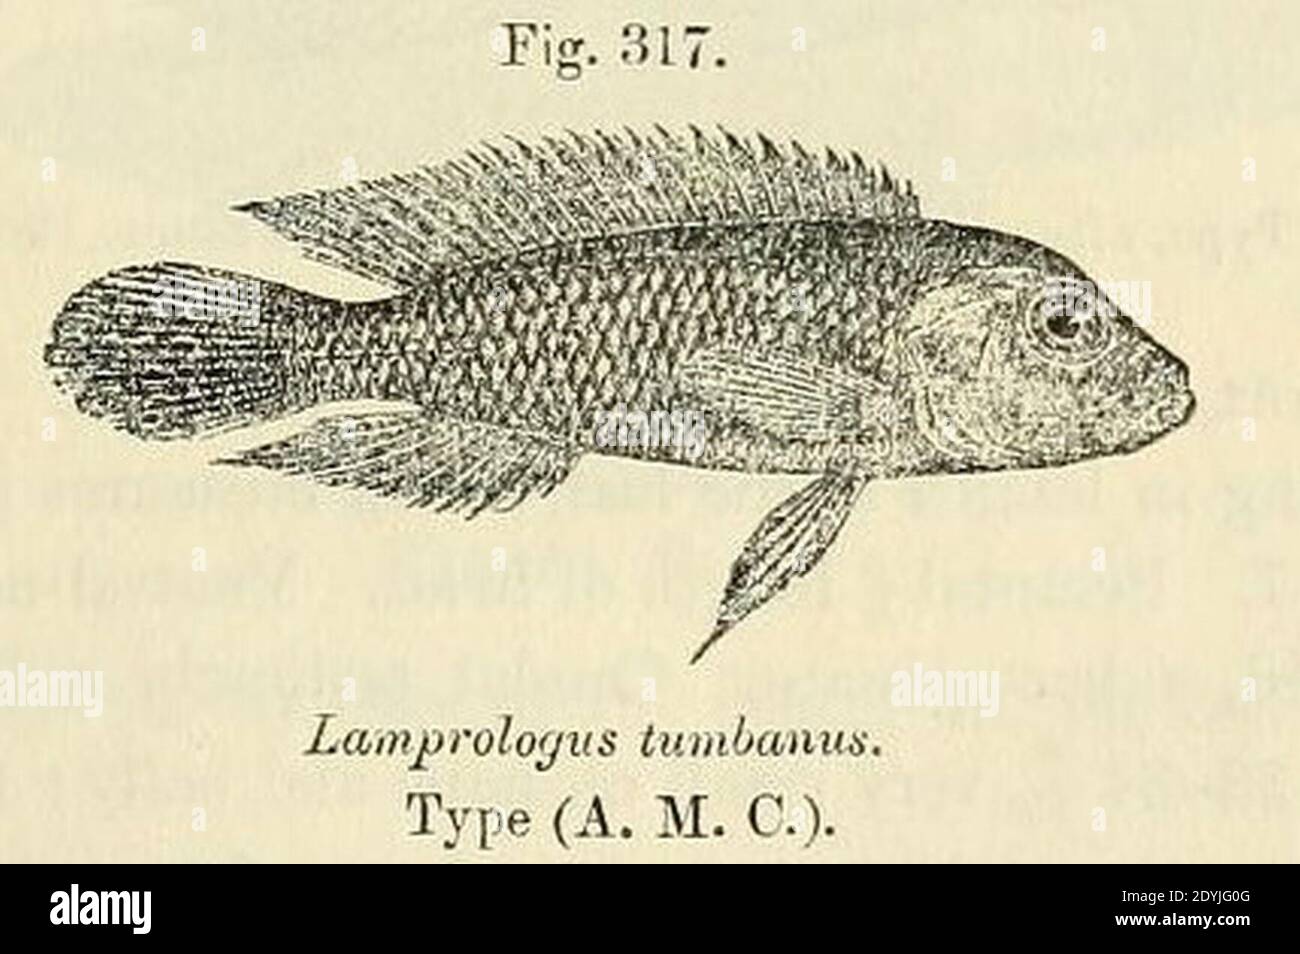 Lamprologus tumbanus. Stock Photo